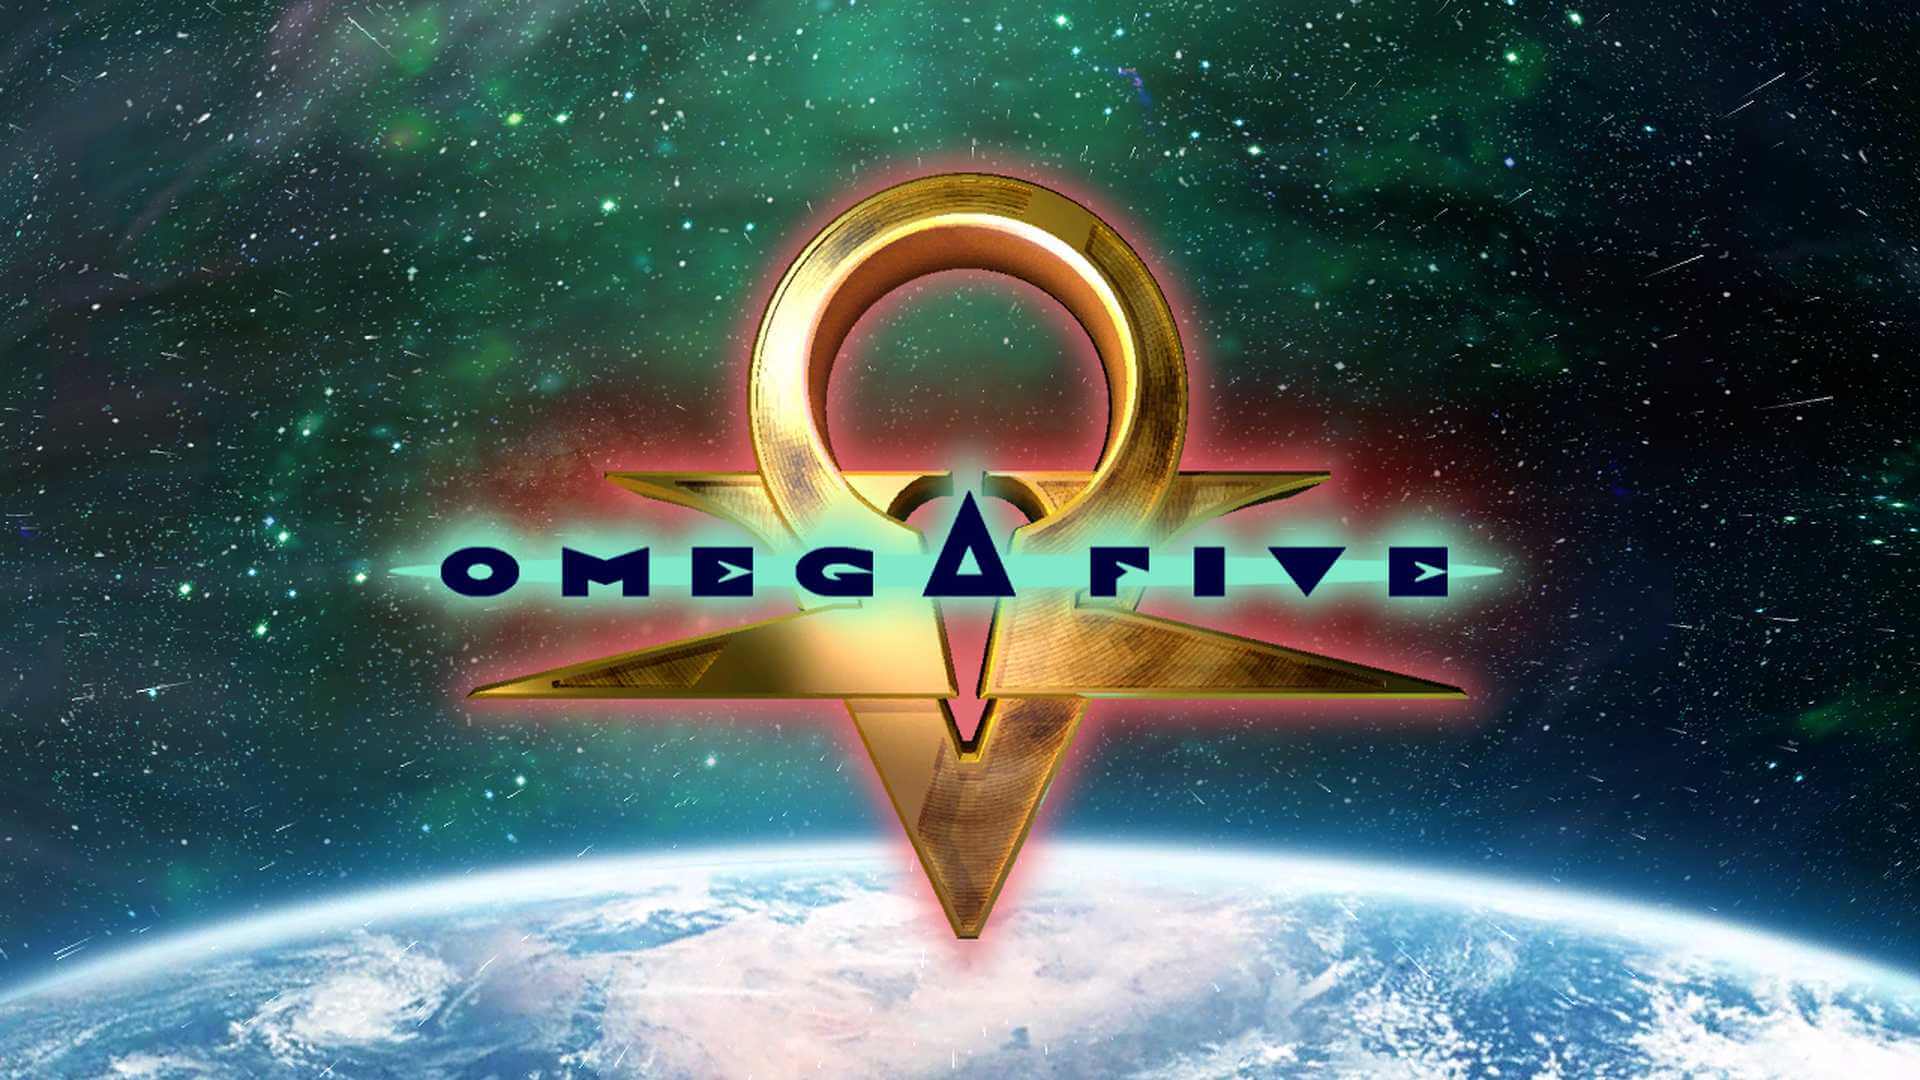 Эксклюзив Xbox 360 - игра Omega Five - вновь стала доступна для покупки на Xbox